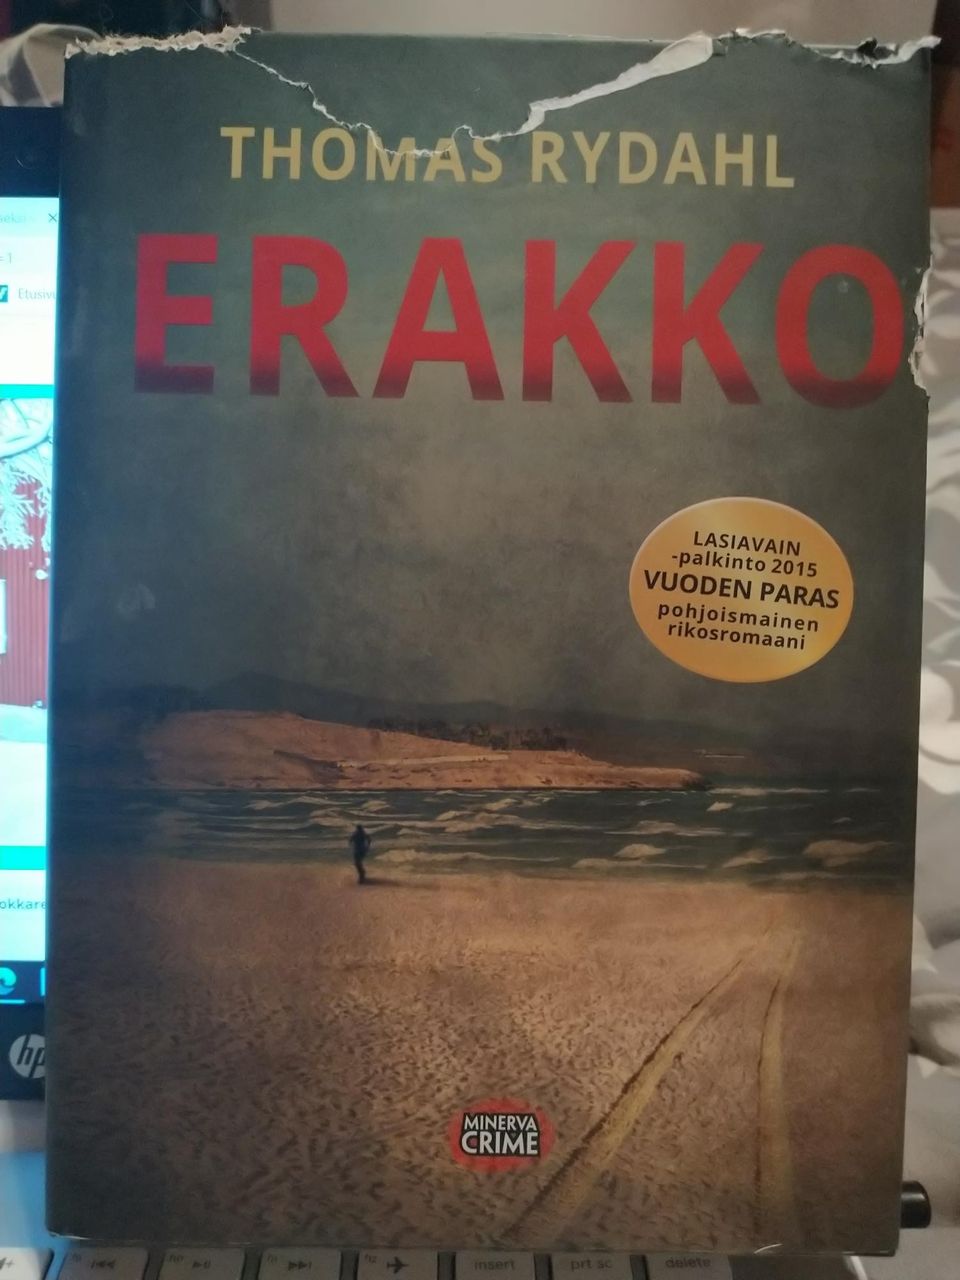 Erakko - Thomas Rydahl